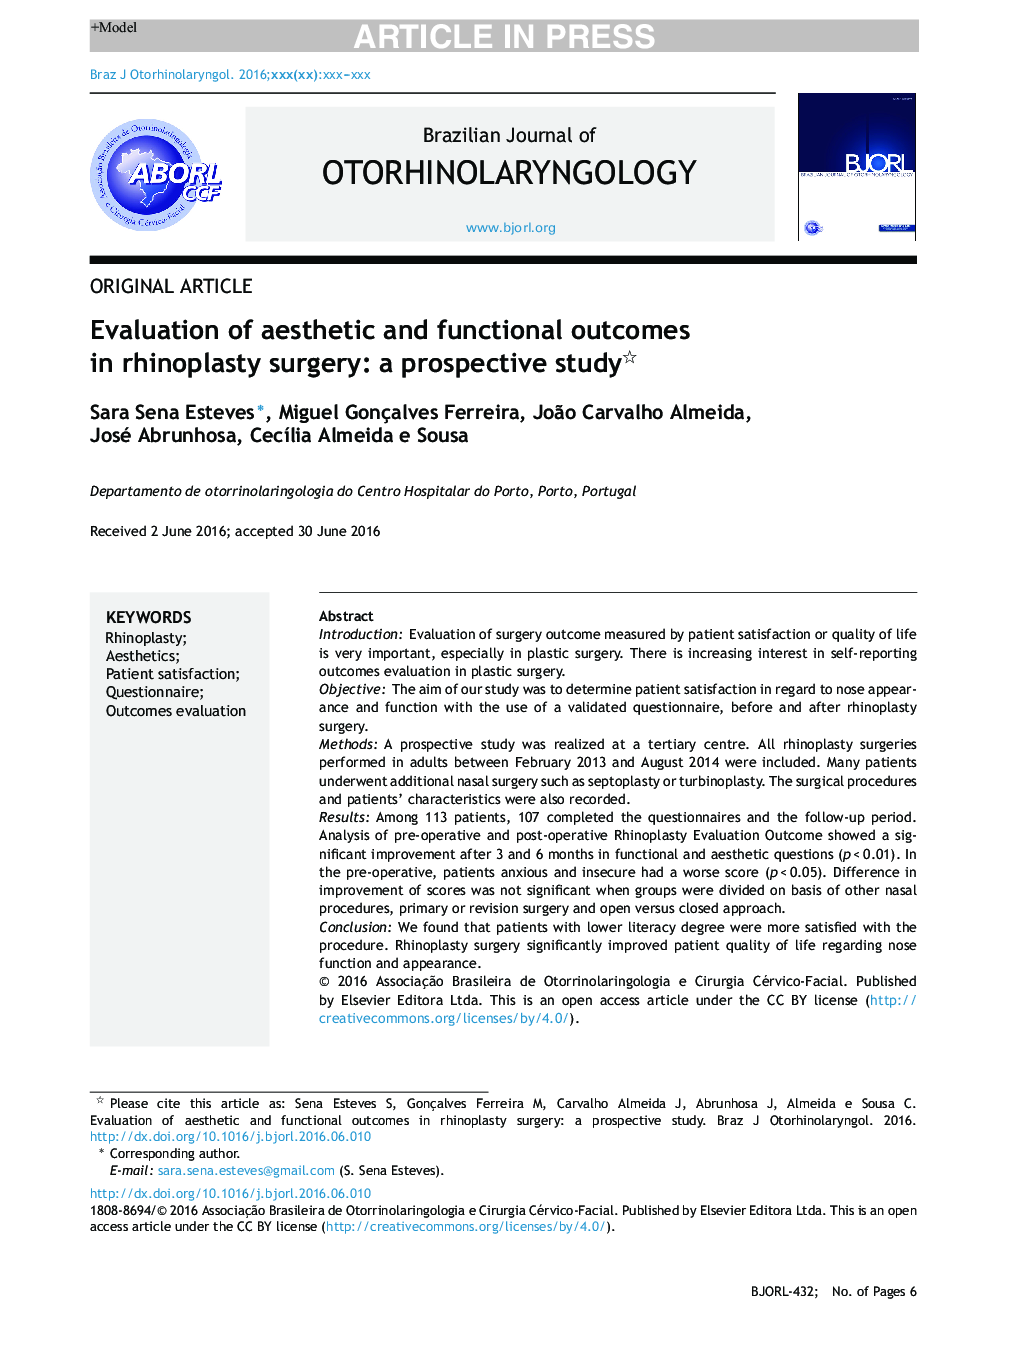 ارزیابی نتایج زیبایی شناختی و عملکردی در جراحی رینوپلاستی: یک مطالعه آینده نگر 